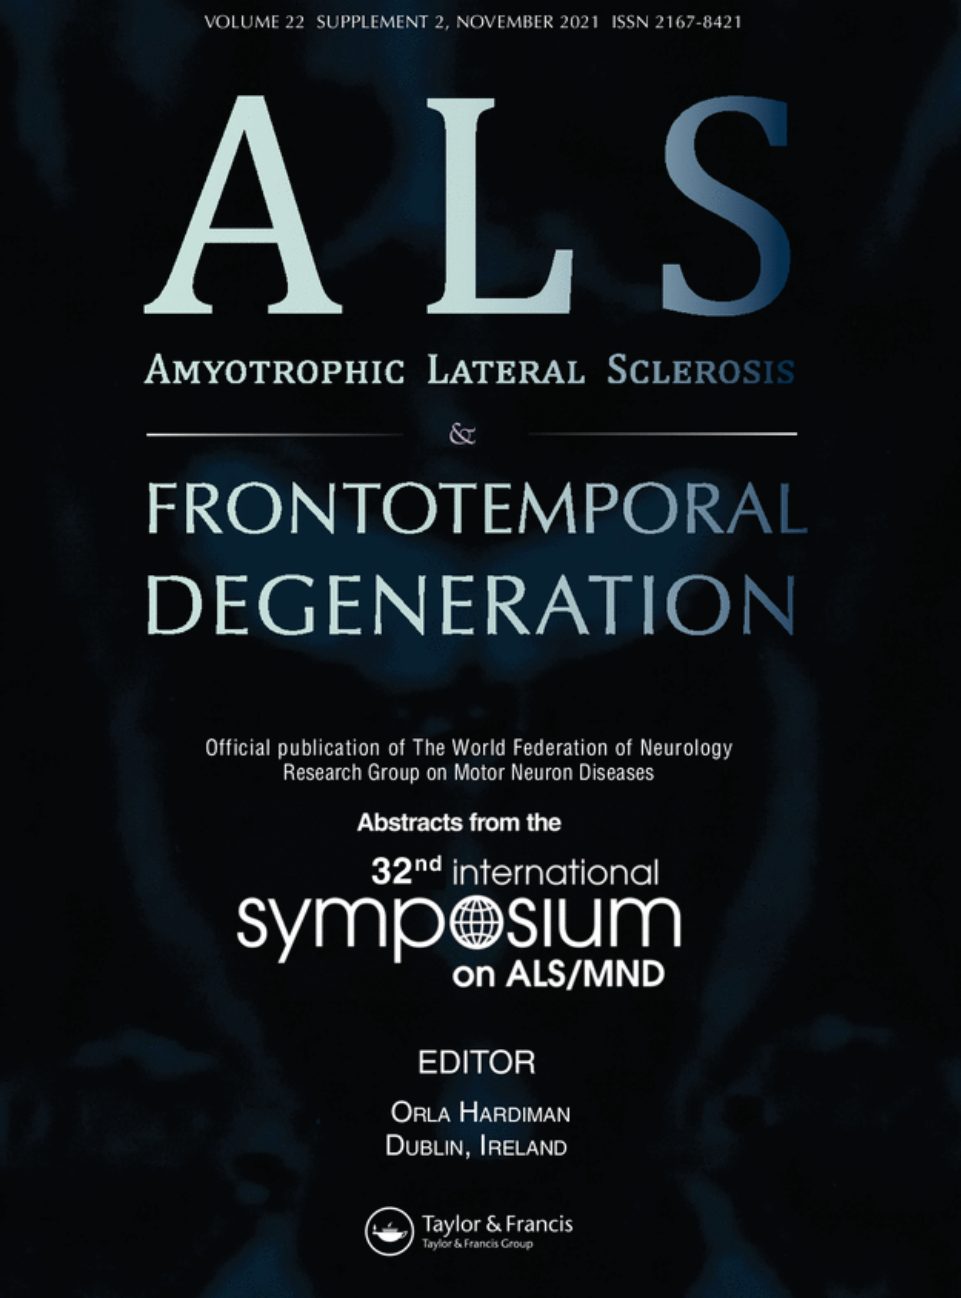 Abstracts online 2021 International Symposium on ALS/MND